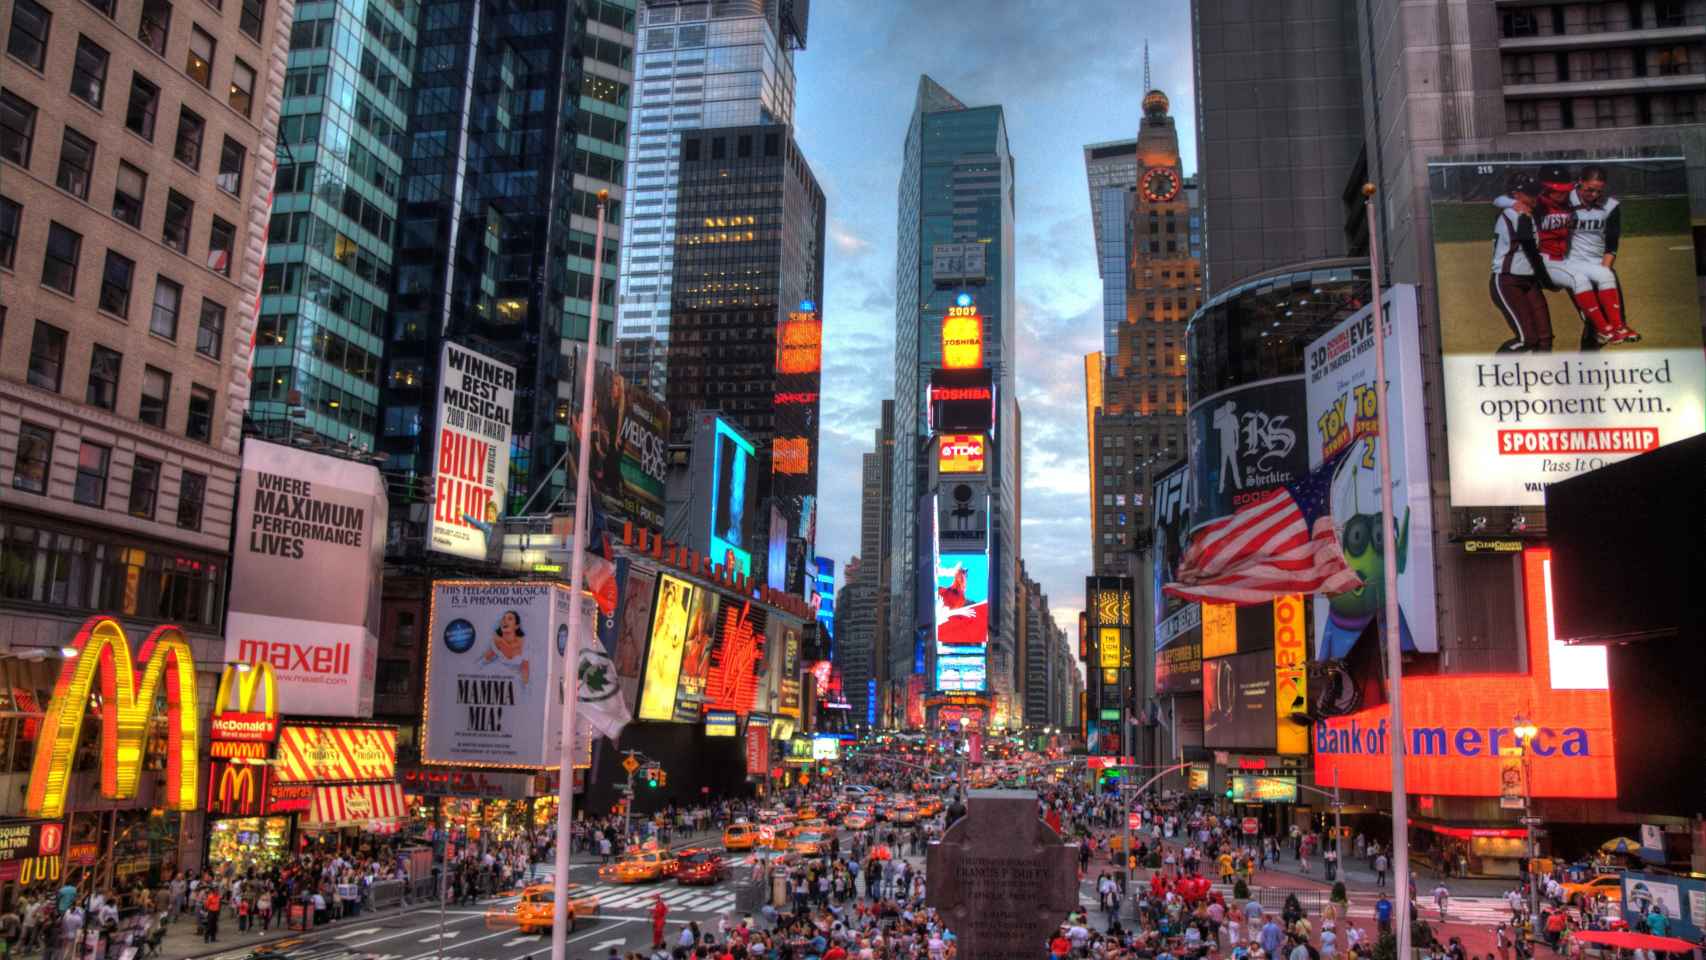 Times Square, en Nueva York